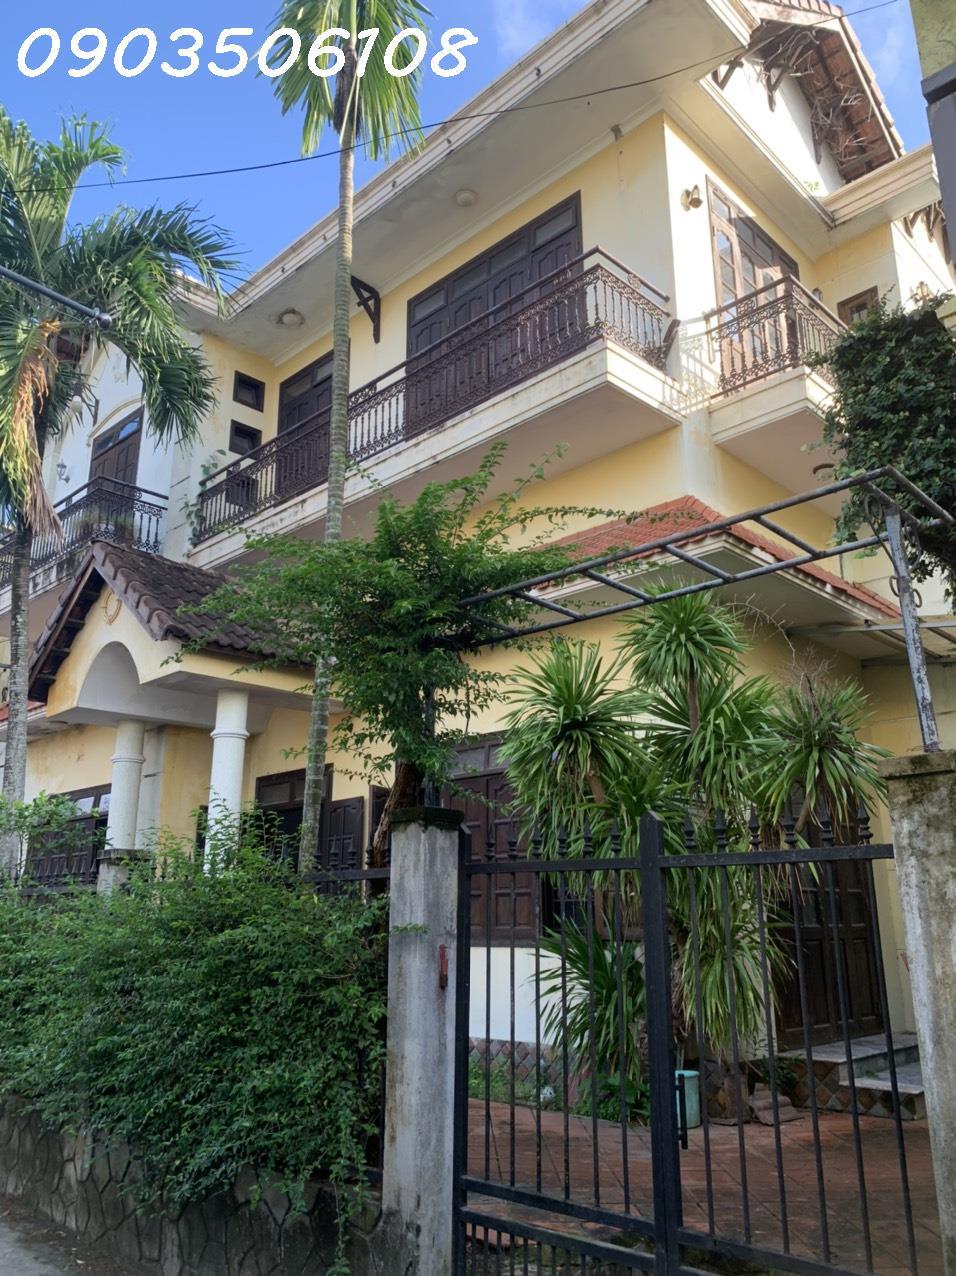 Cho thuê nhà 3 tầng đường Phan Bội Châu ( phố Pháp ), trung tâm phố cổ, Hội An, Quảng Nam913057